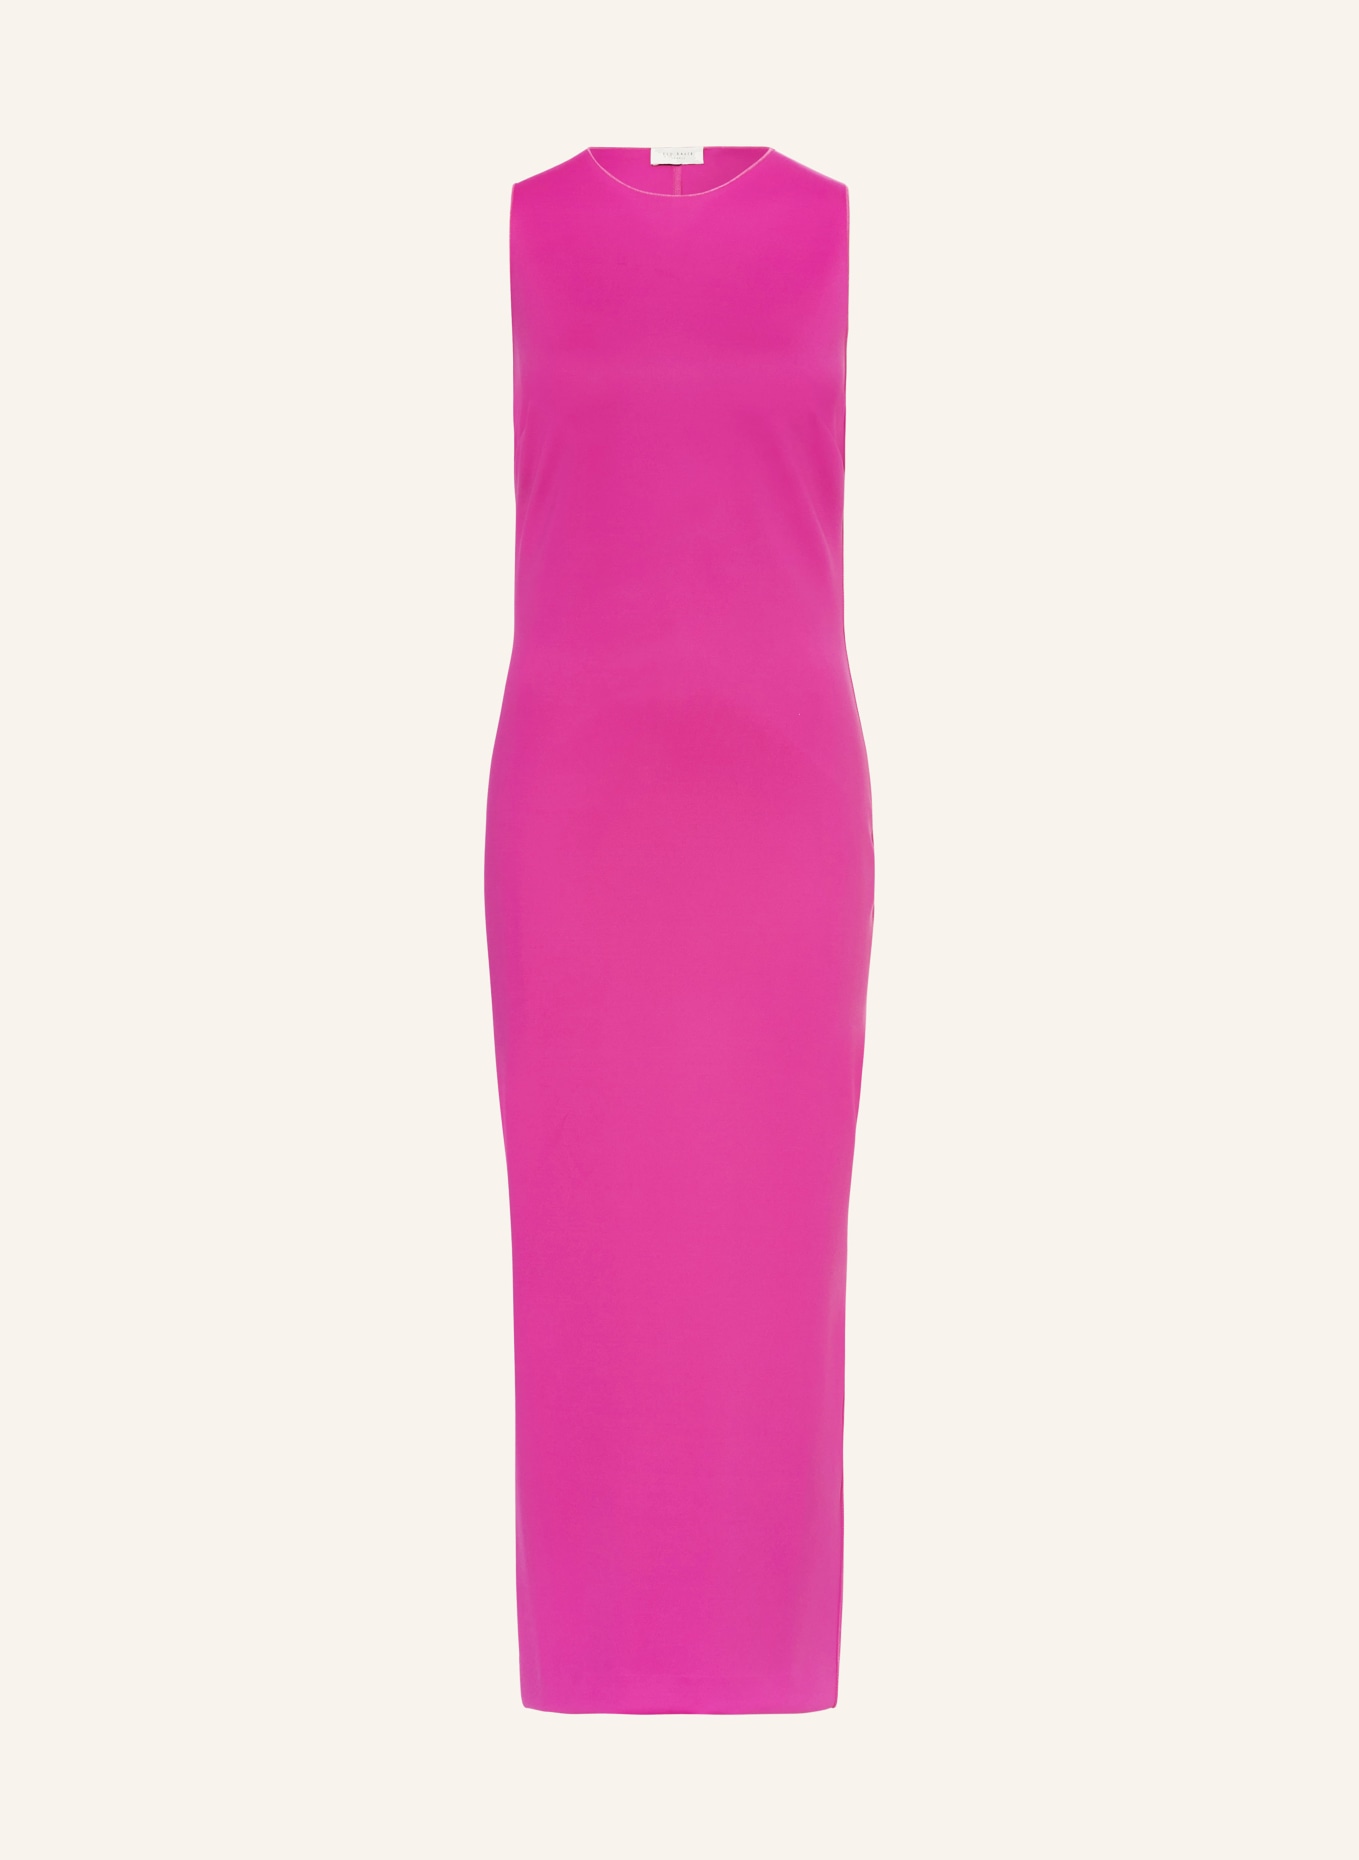 TED BAKER Dress ESTHAA, Color: PINK (Image 1)